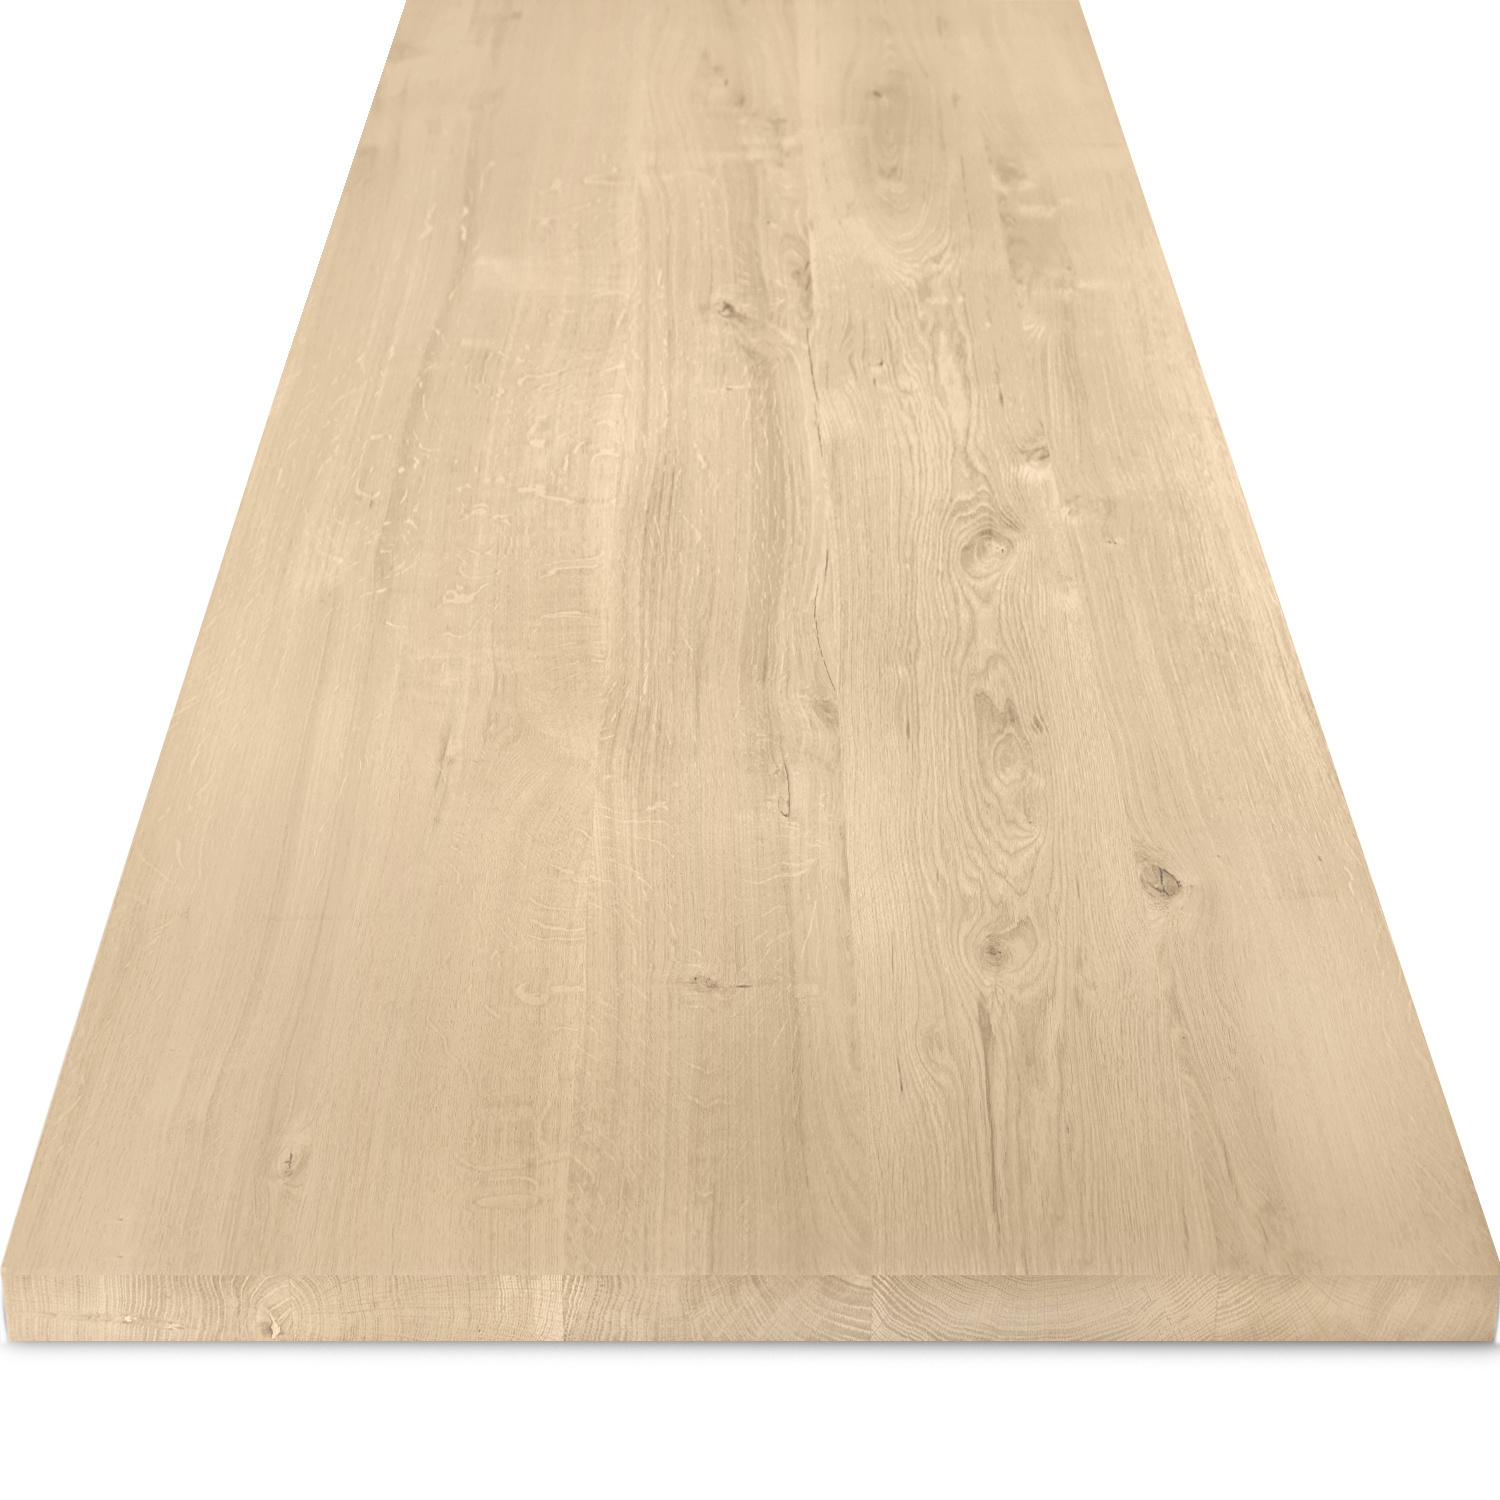  Eiken tafelblad - 4 cm dik (1-laag) - Diverse afmetingen - rustiek Europees eikenhout - met brede lamellen (circa 10-12 cm) - verlijmd kd 8-12%